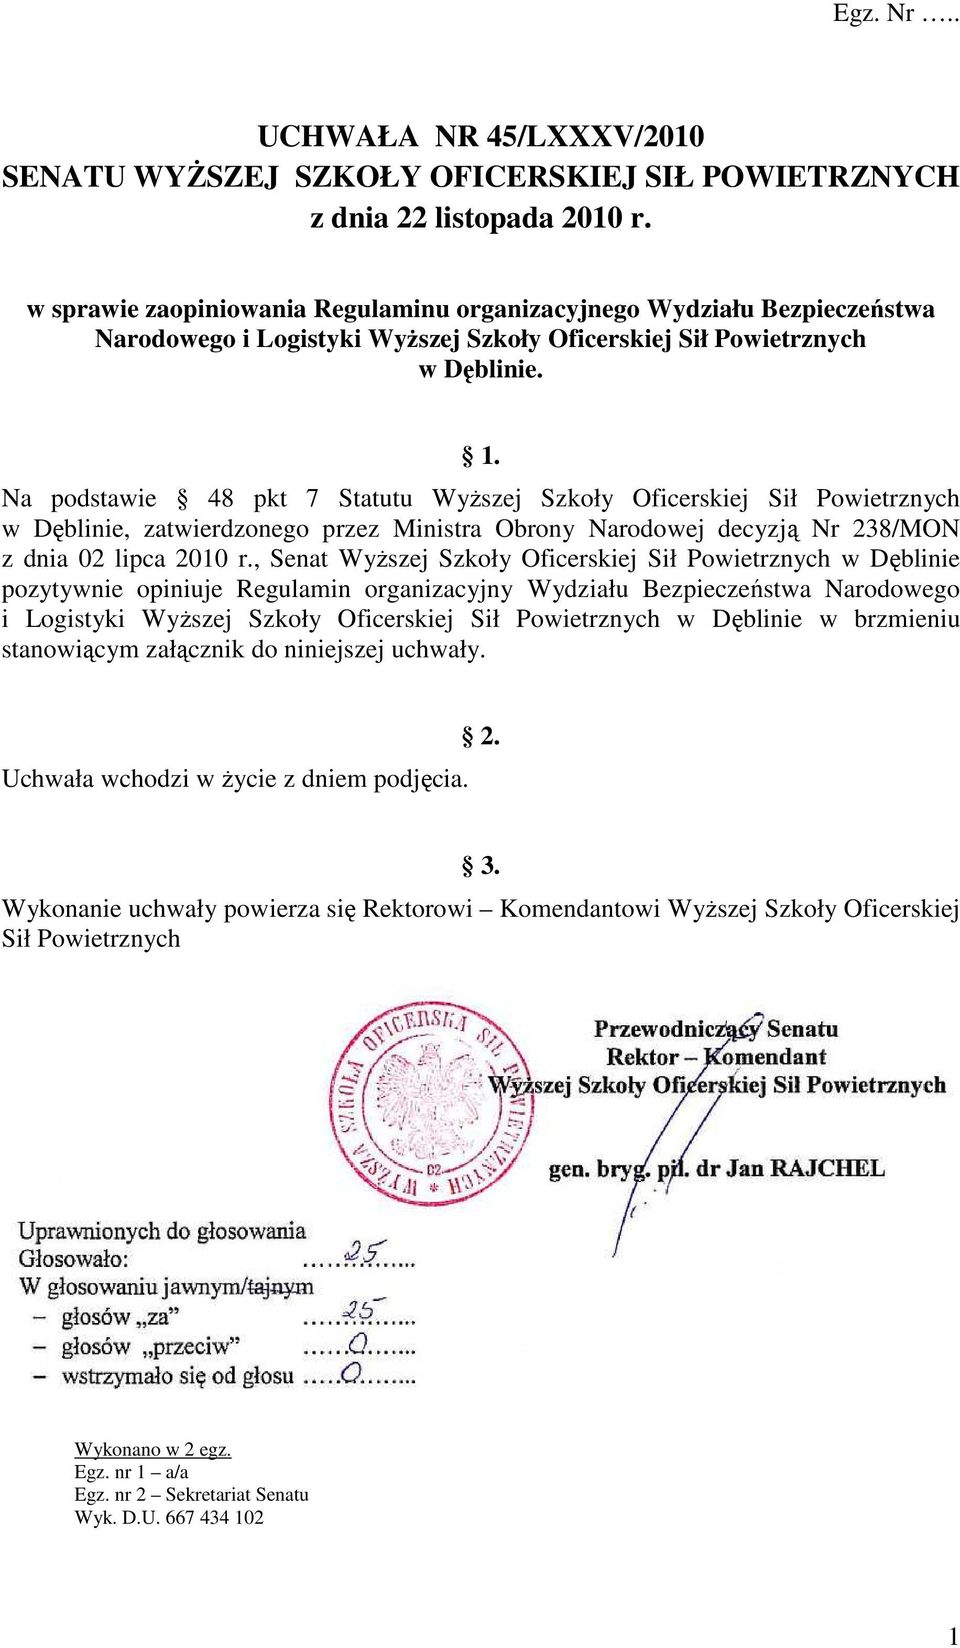 Na podstawie 48 pkt 7 Statutu WyŜszej Szkoły Oficerskiej Sił Powietrznych w Dęblinie, zatwierdzonego przez Ministra Obrony Narodowej decyzją Nr 238/MON z dnia 02 lipca 2010 r.